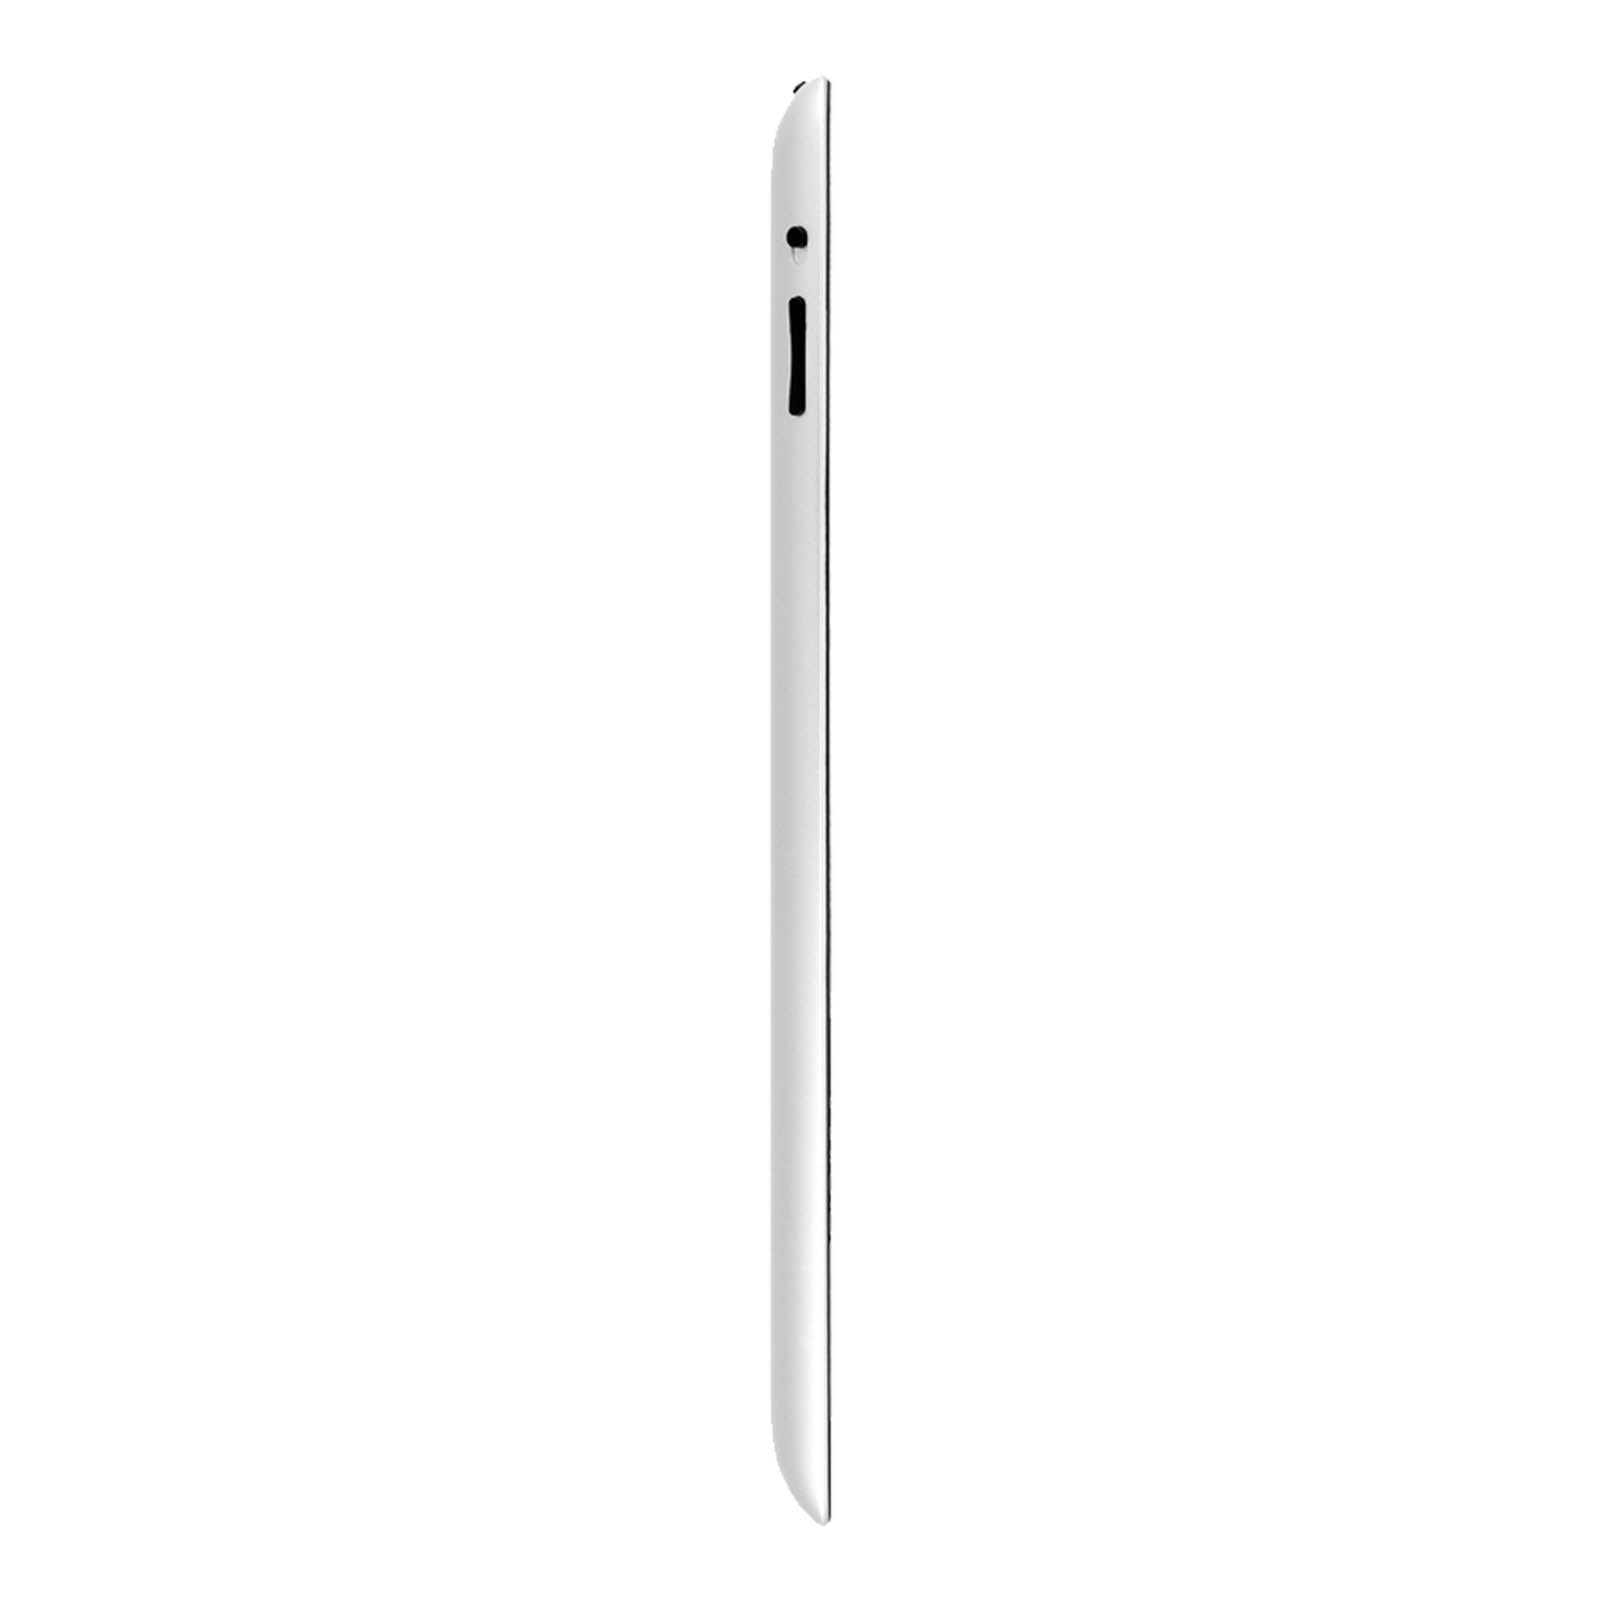 Apple iPad 3 64GB Black Very Good - Unlocked